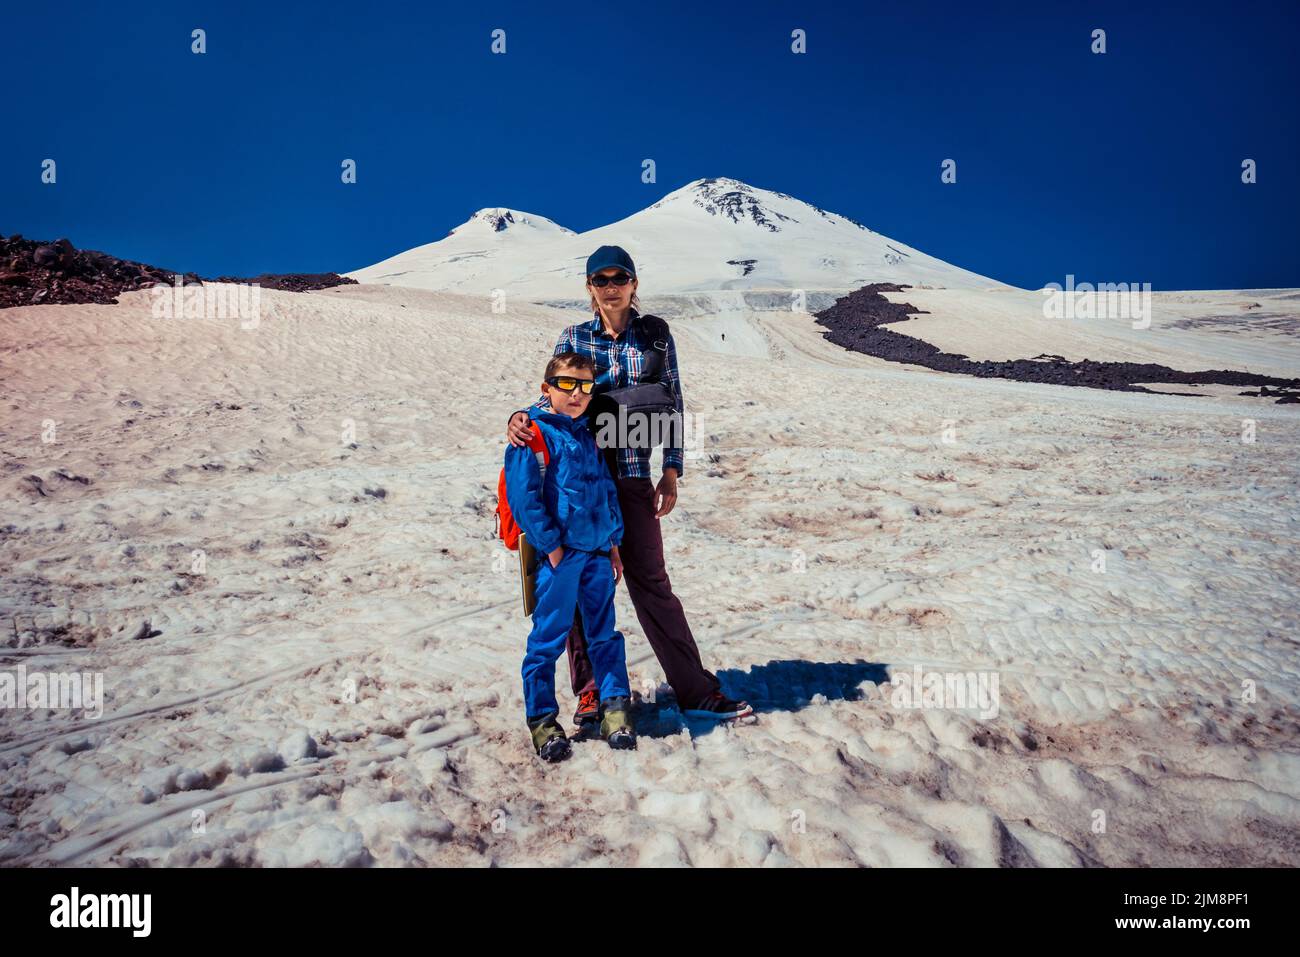 Maman et fils sur le fond des montagnes, vacances en famille, randonnée, détermination, courage, réalisation de soi. Journée internationale de alpinisme - Banque D'Images